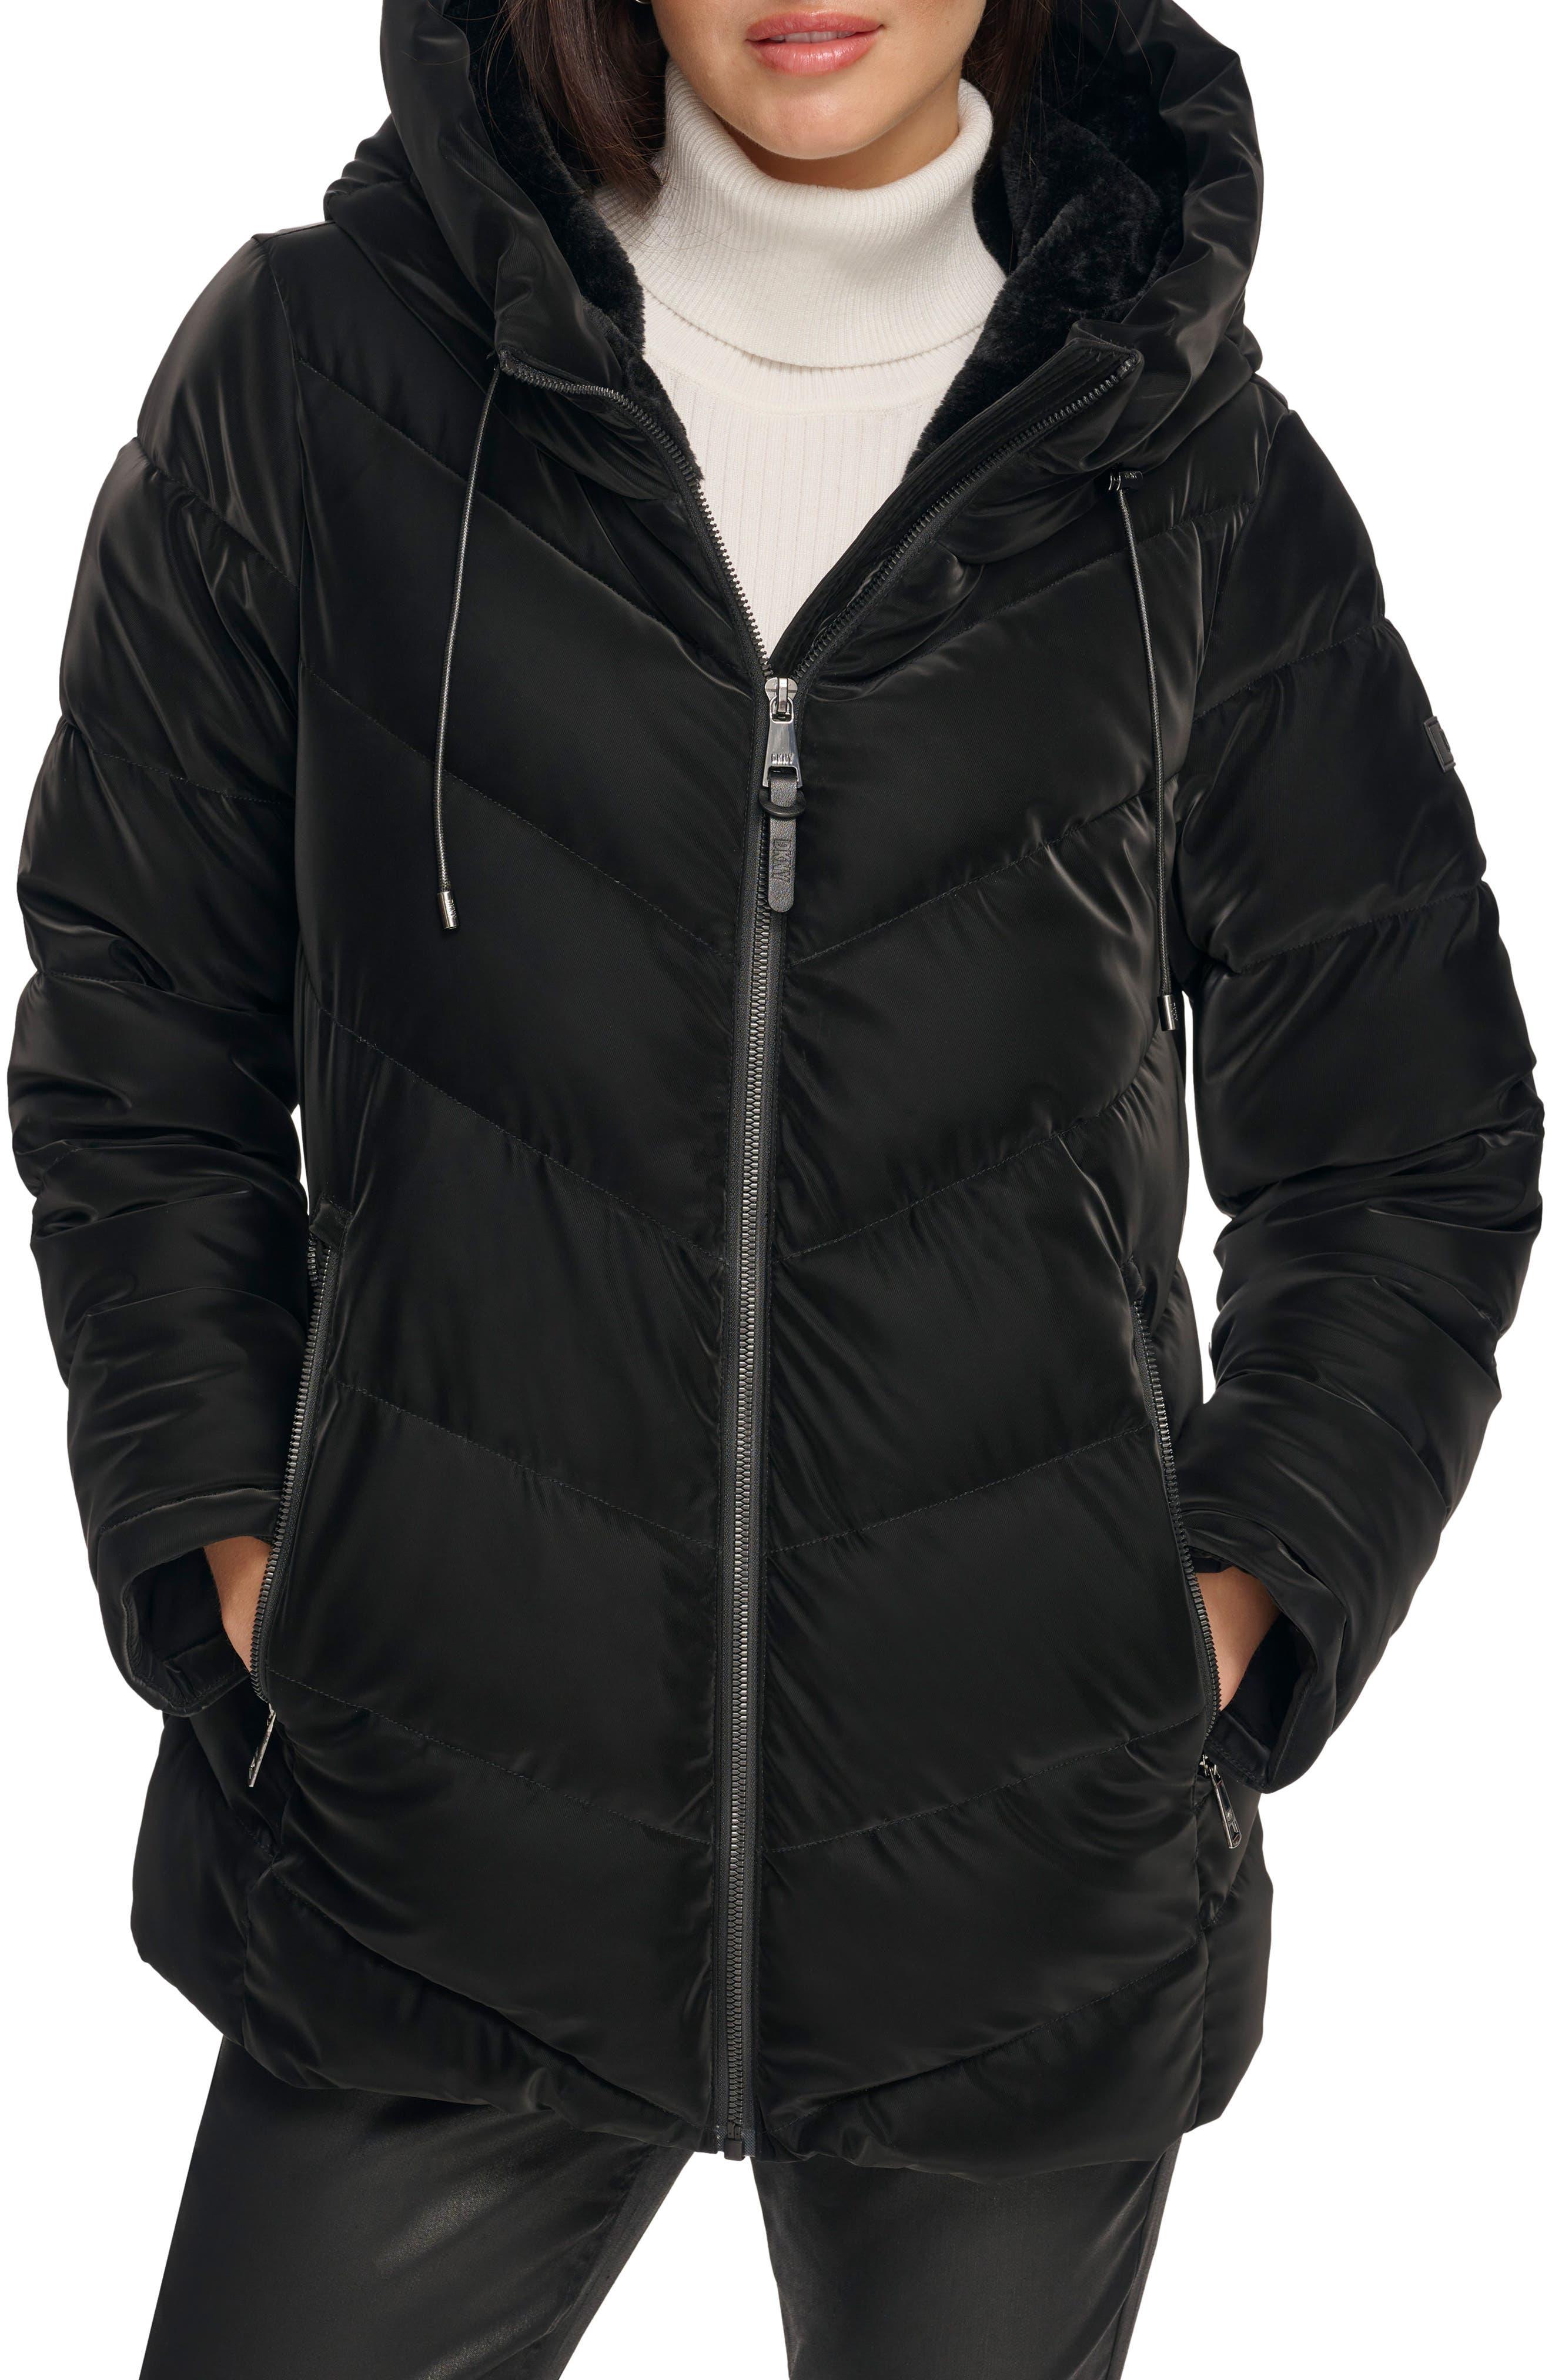 DKNY Women's Soft Outerwear Puffer Comfortable Jacket, Loden